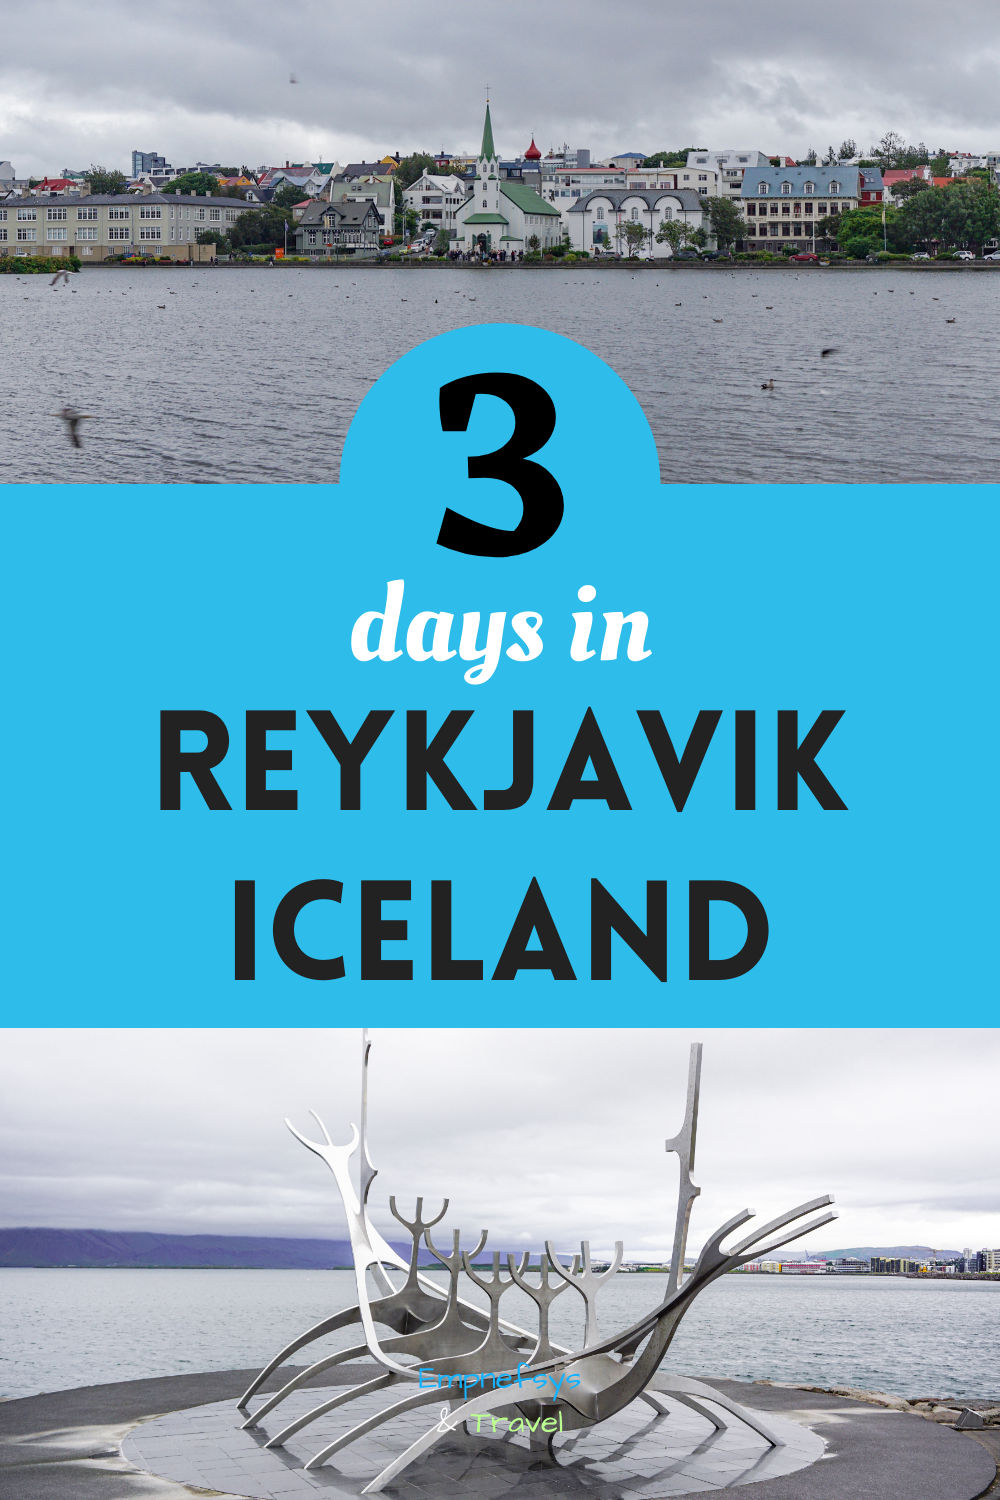 reykjavik excursions schedule